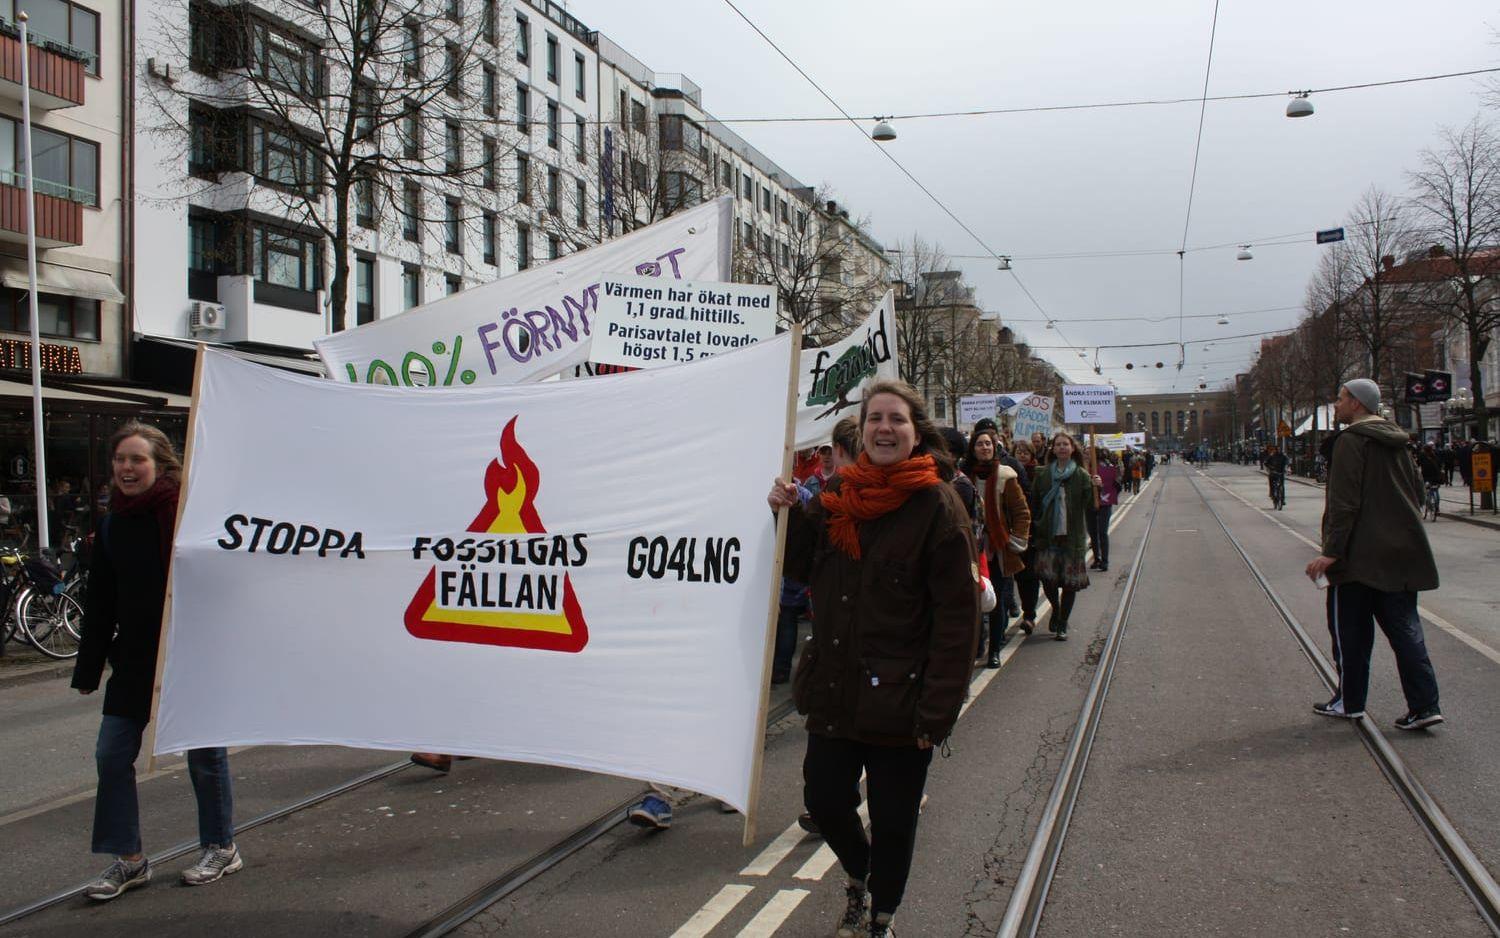 Kampanjen "Stoppa fossilgasfällan" vill skrota planerna på en ny fossilgasterminal i Göteborgs hamn.